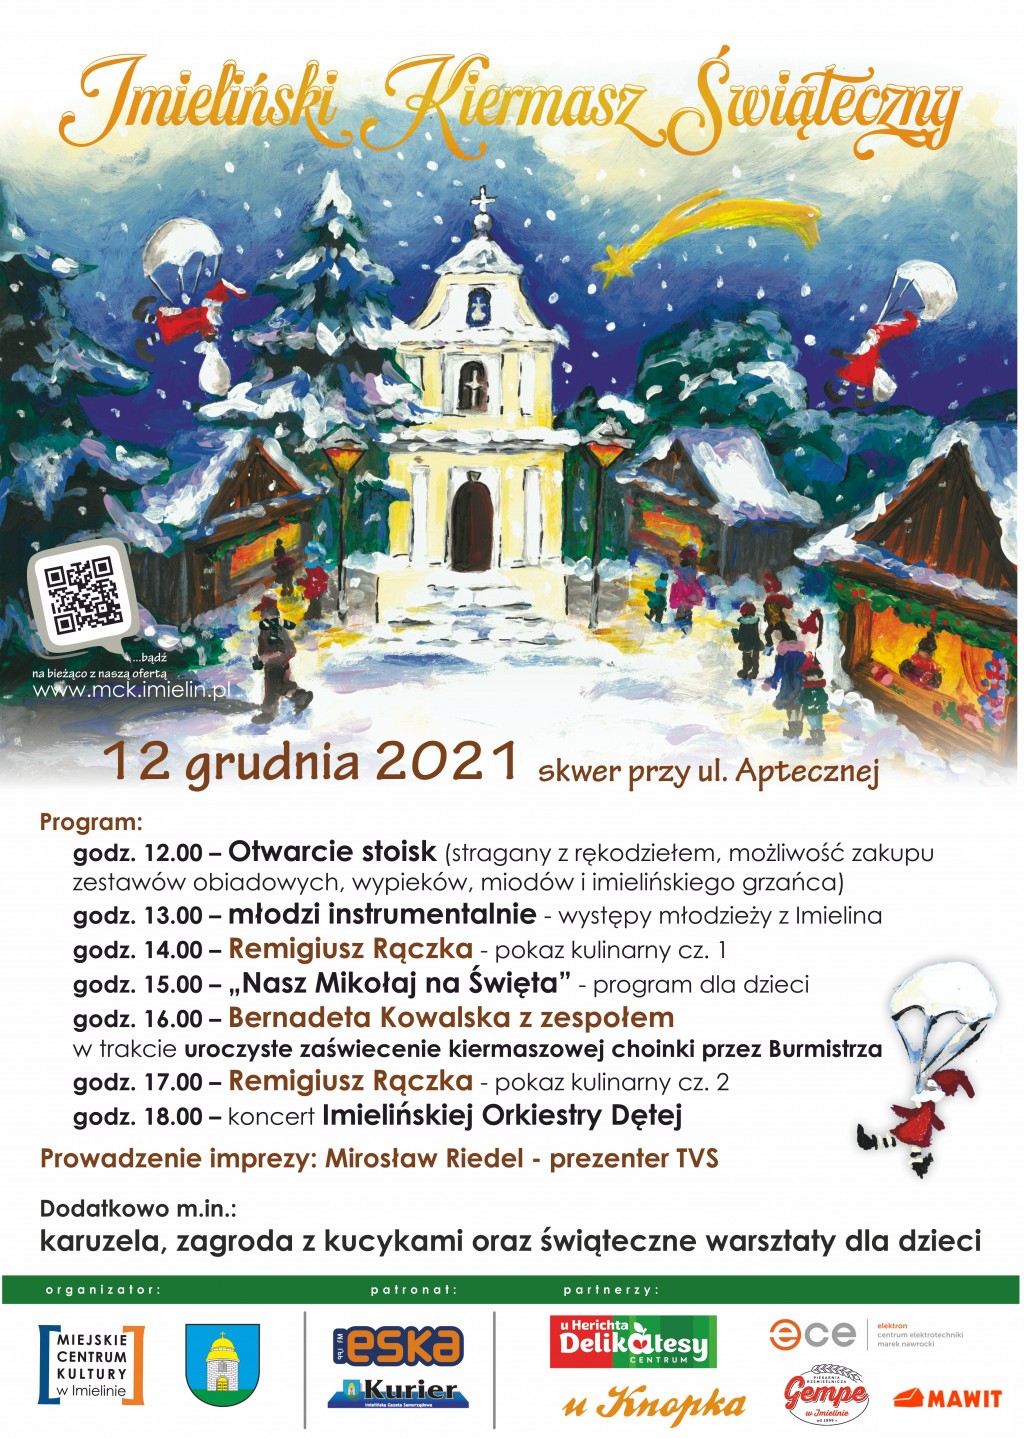 Imieliński Kiermasz Świąteczny 12 grudnia (niedziela) godz. 12:00-18:00